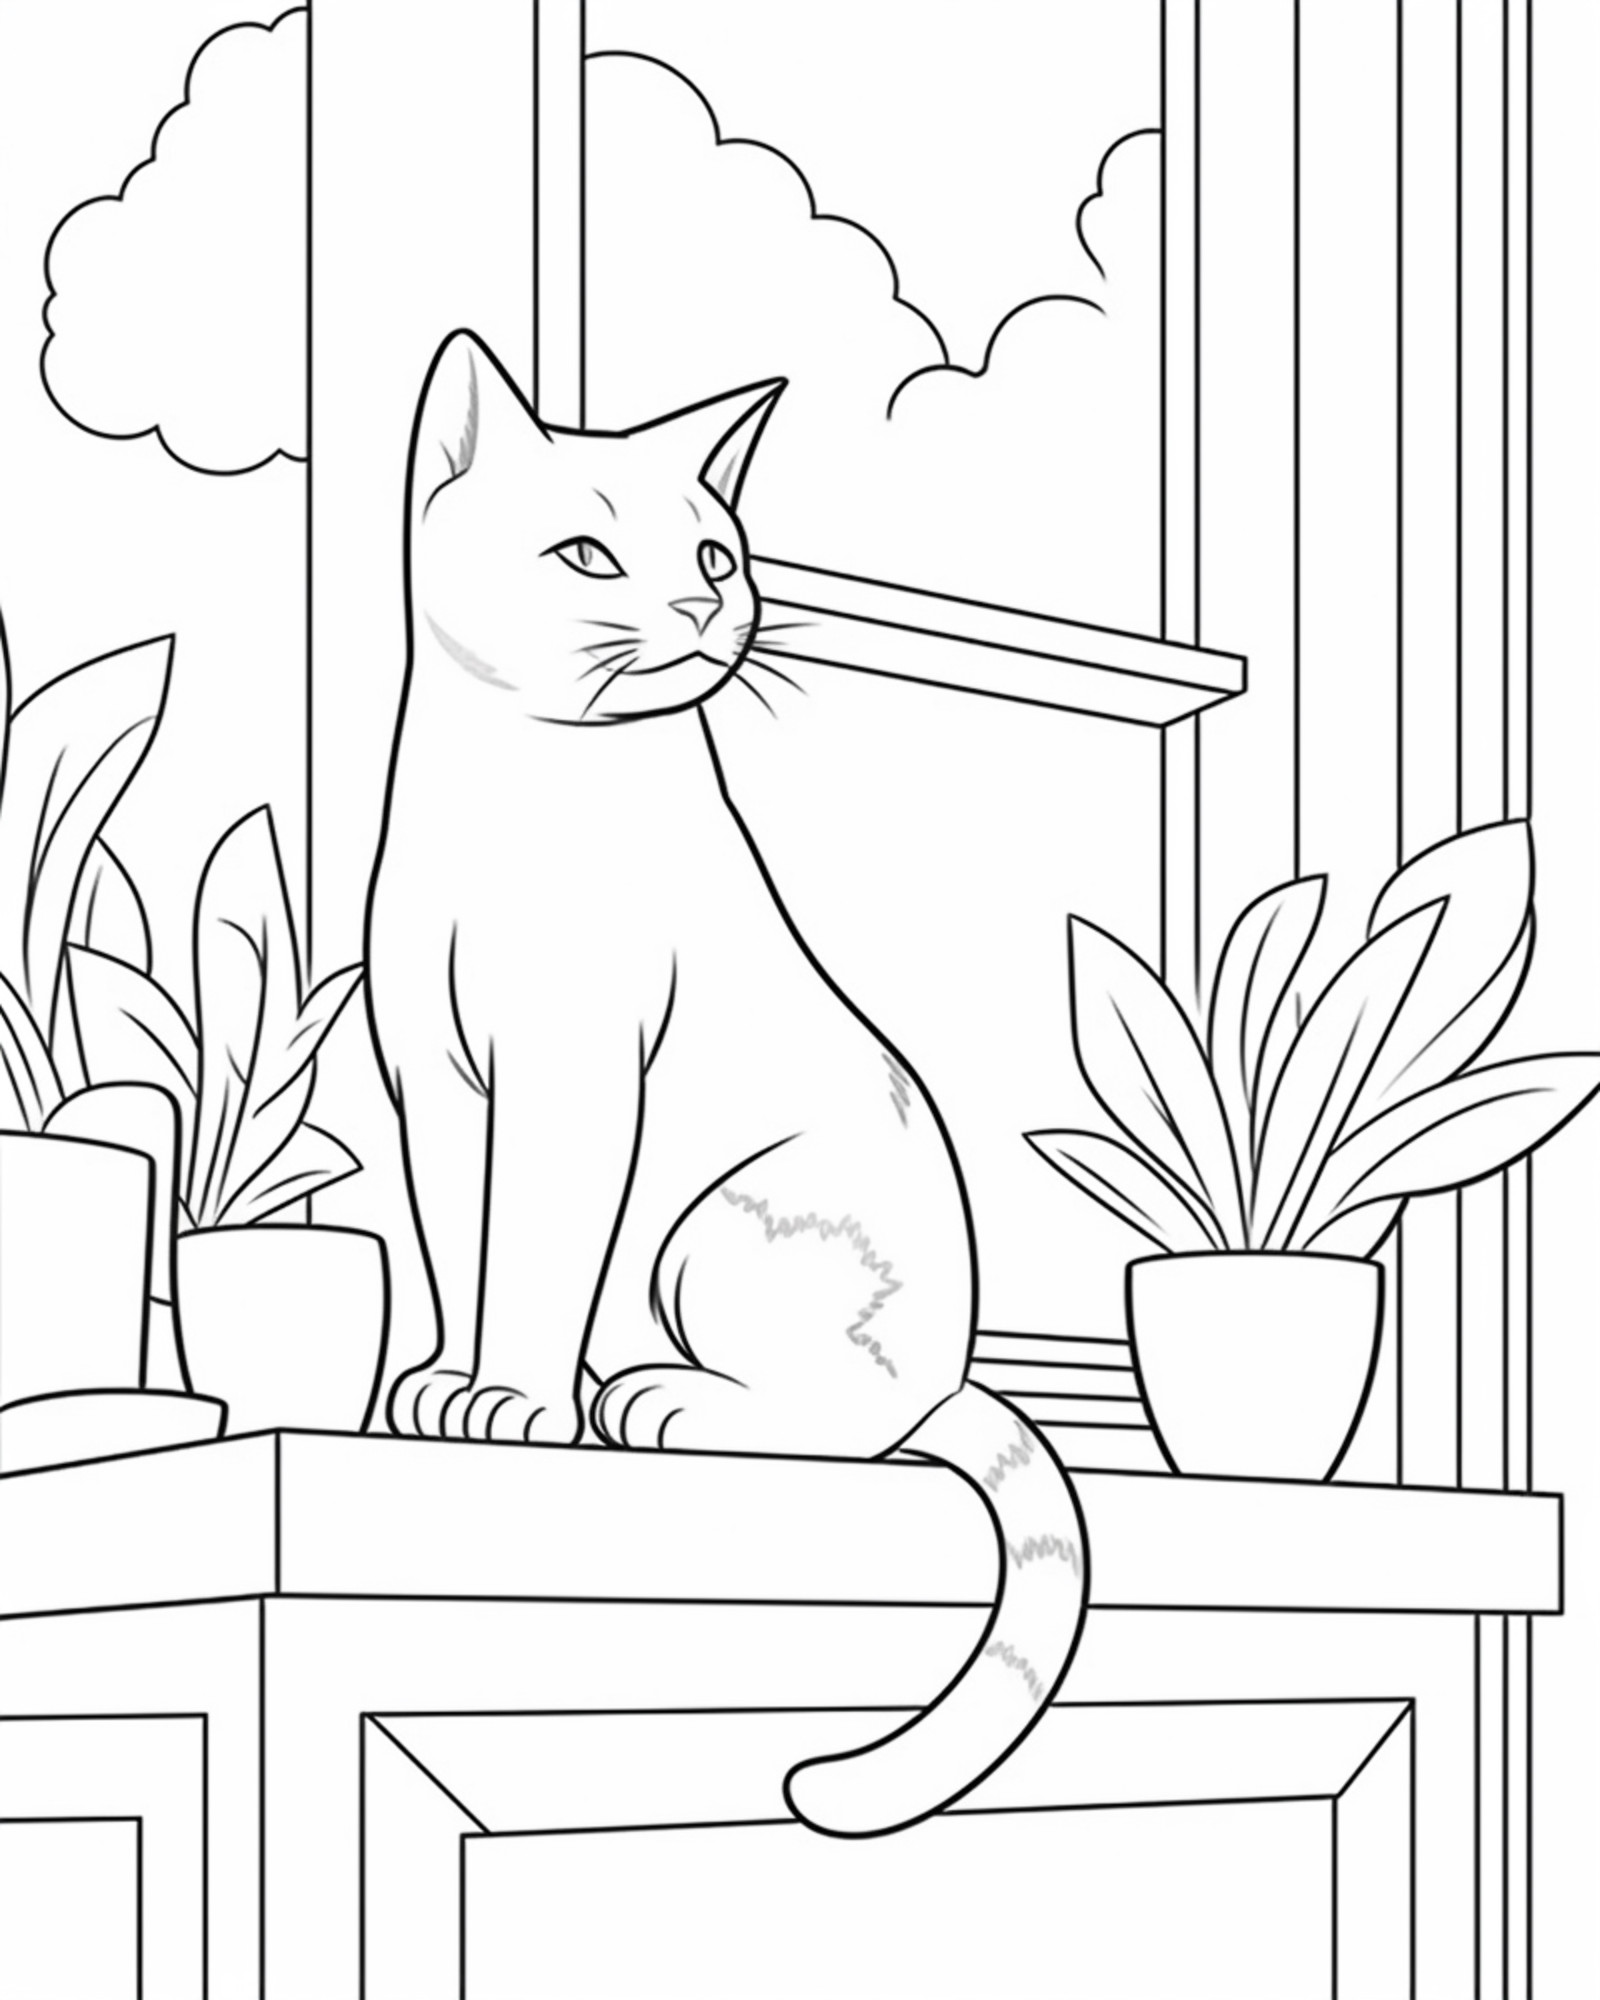 Раскраска для детей: кошка сидит на подоконнике с комнатными цветами